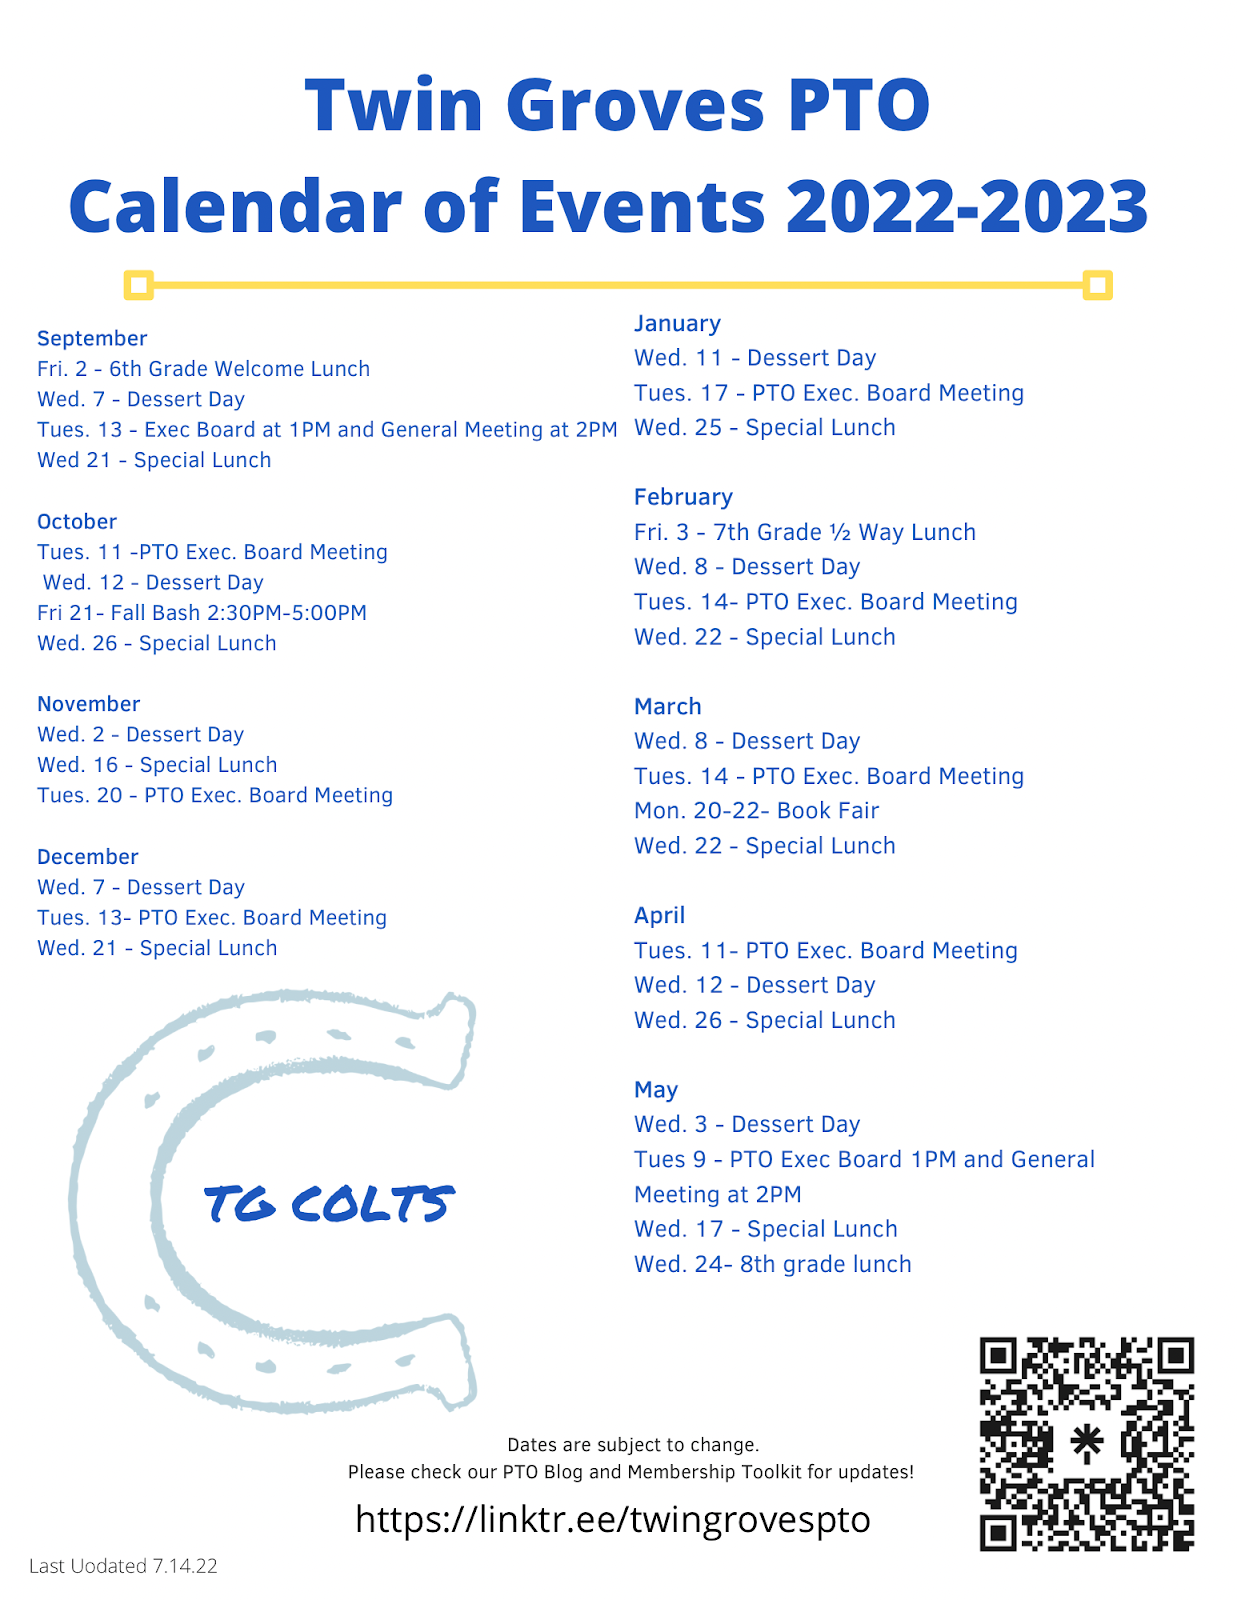 Twin Groves PTO 2022-23 Calendar